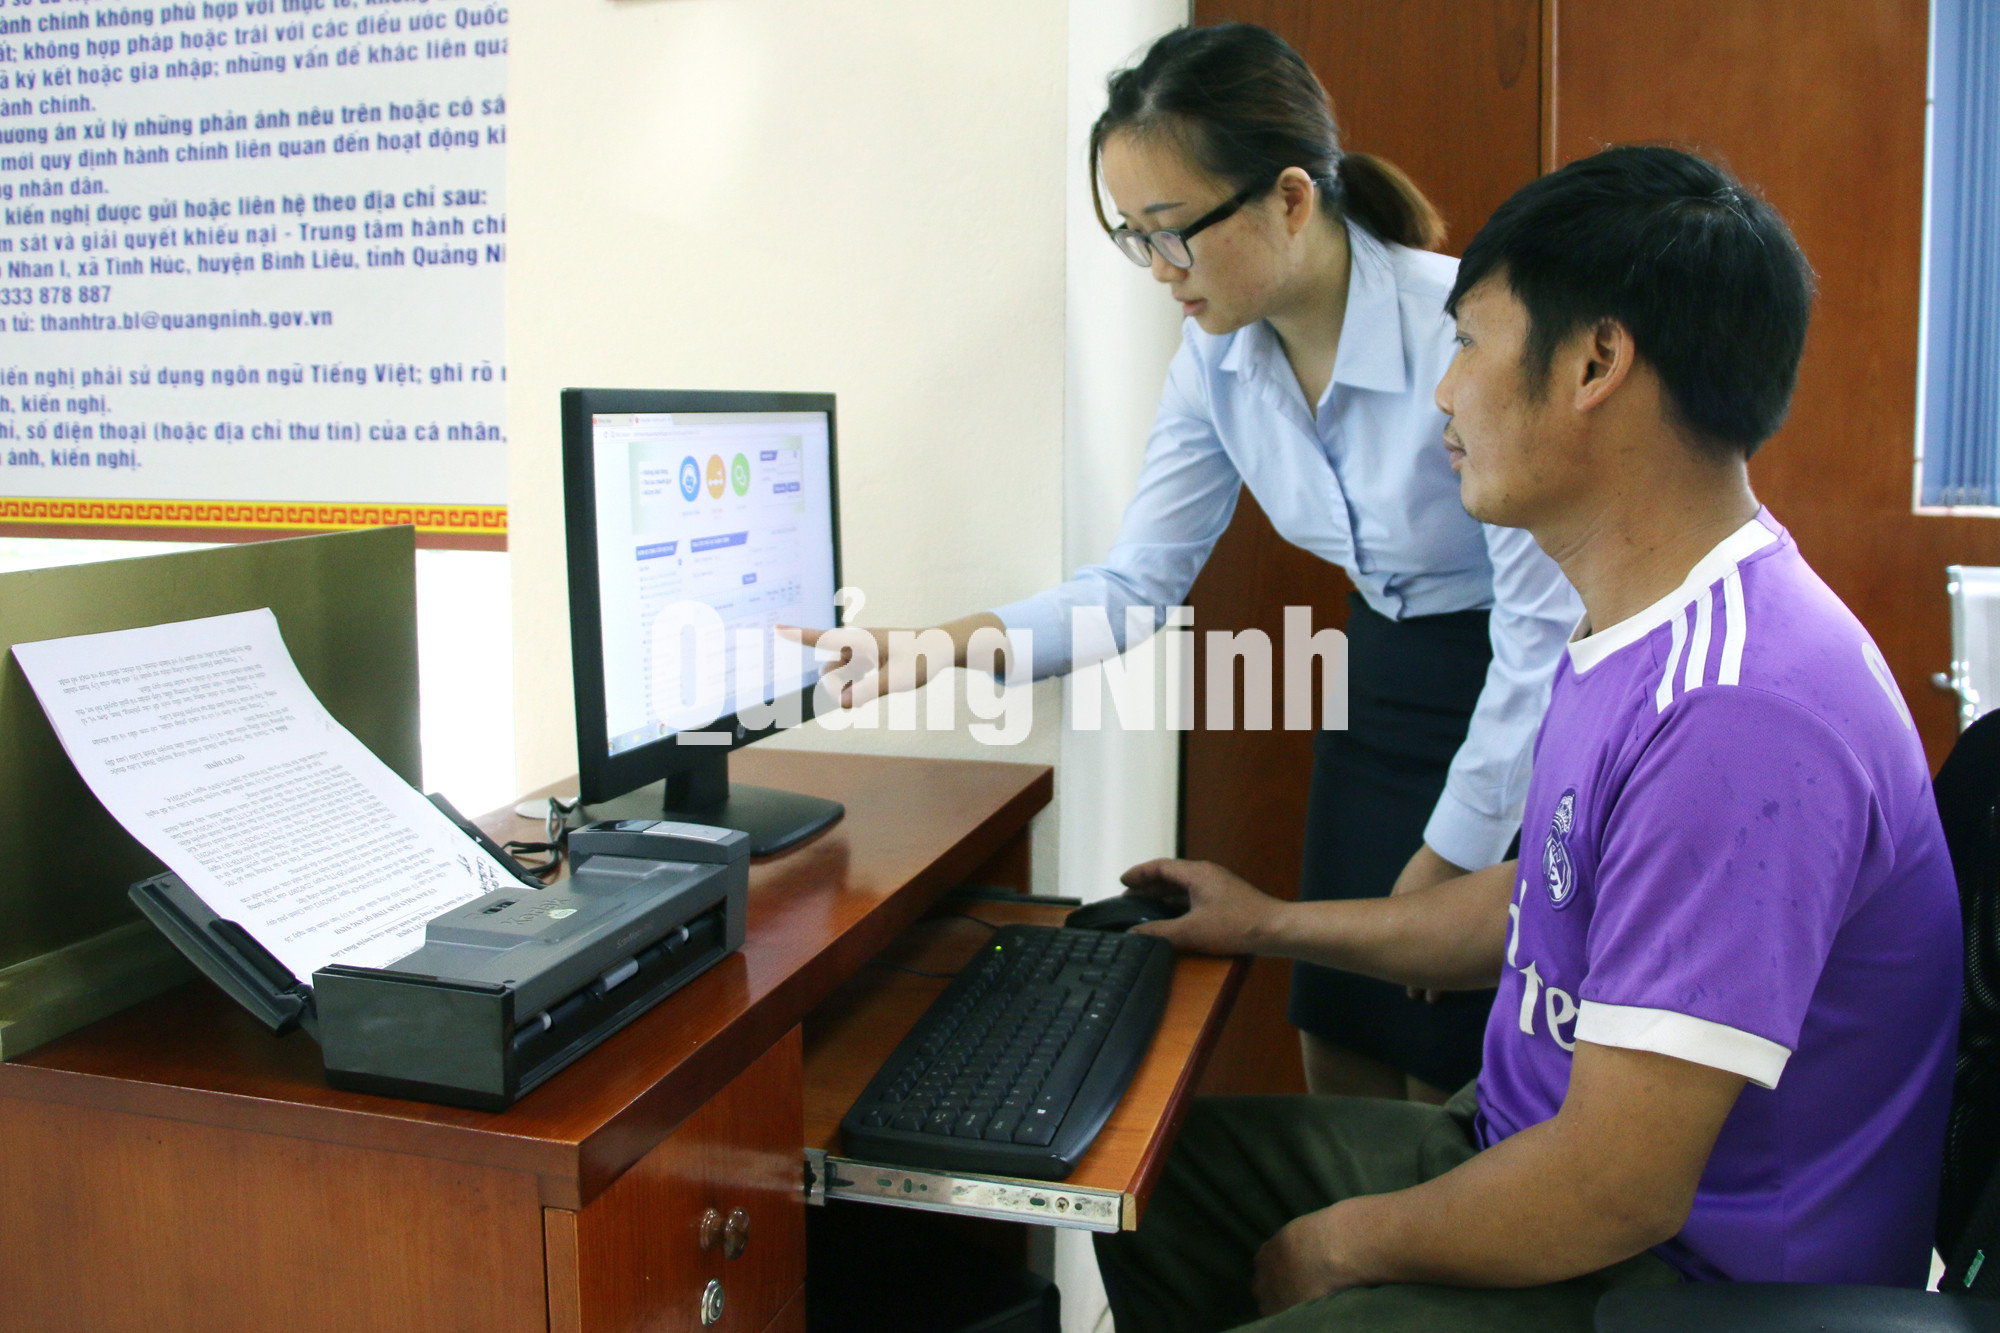 Người dân được các nhân viên TT HCC Bình Liêu hướng dẫn giải quyết các thủ tục hành chính (6-2018). Ảnh: Nguyễn Thanh